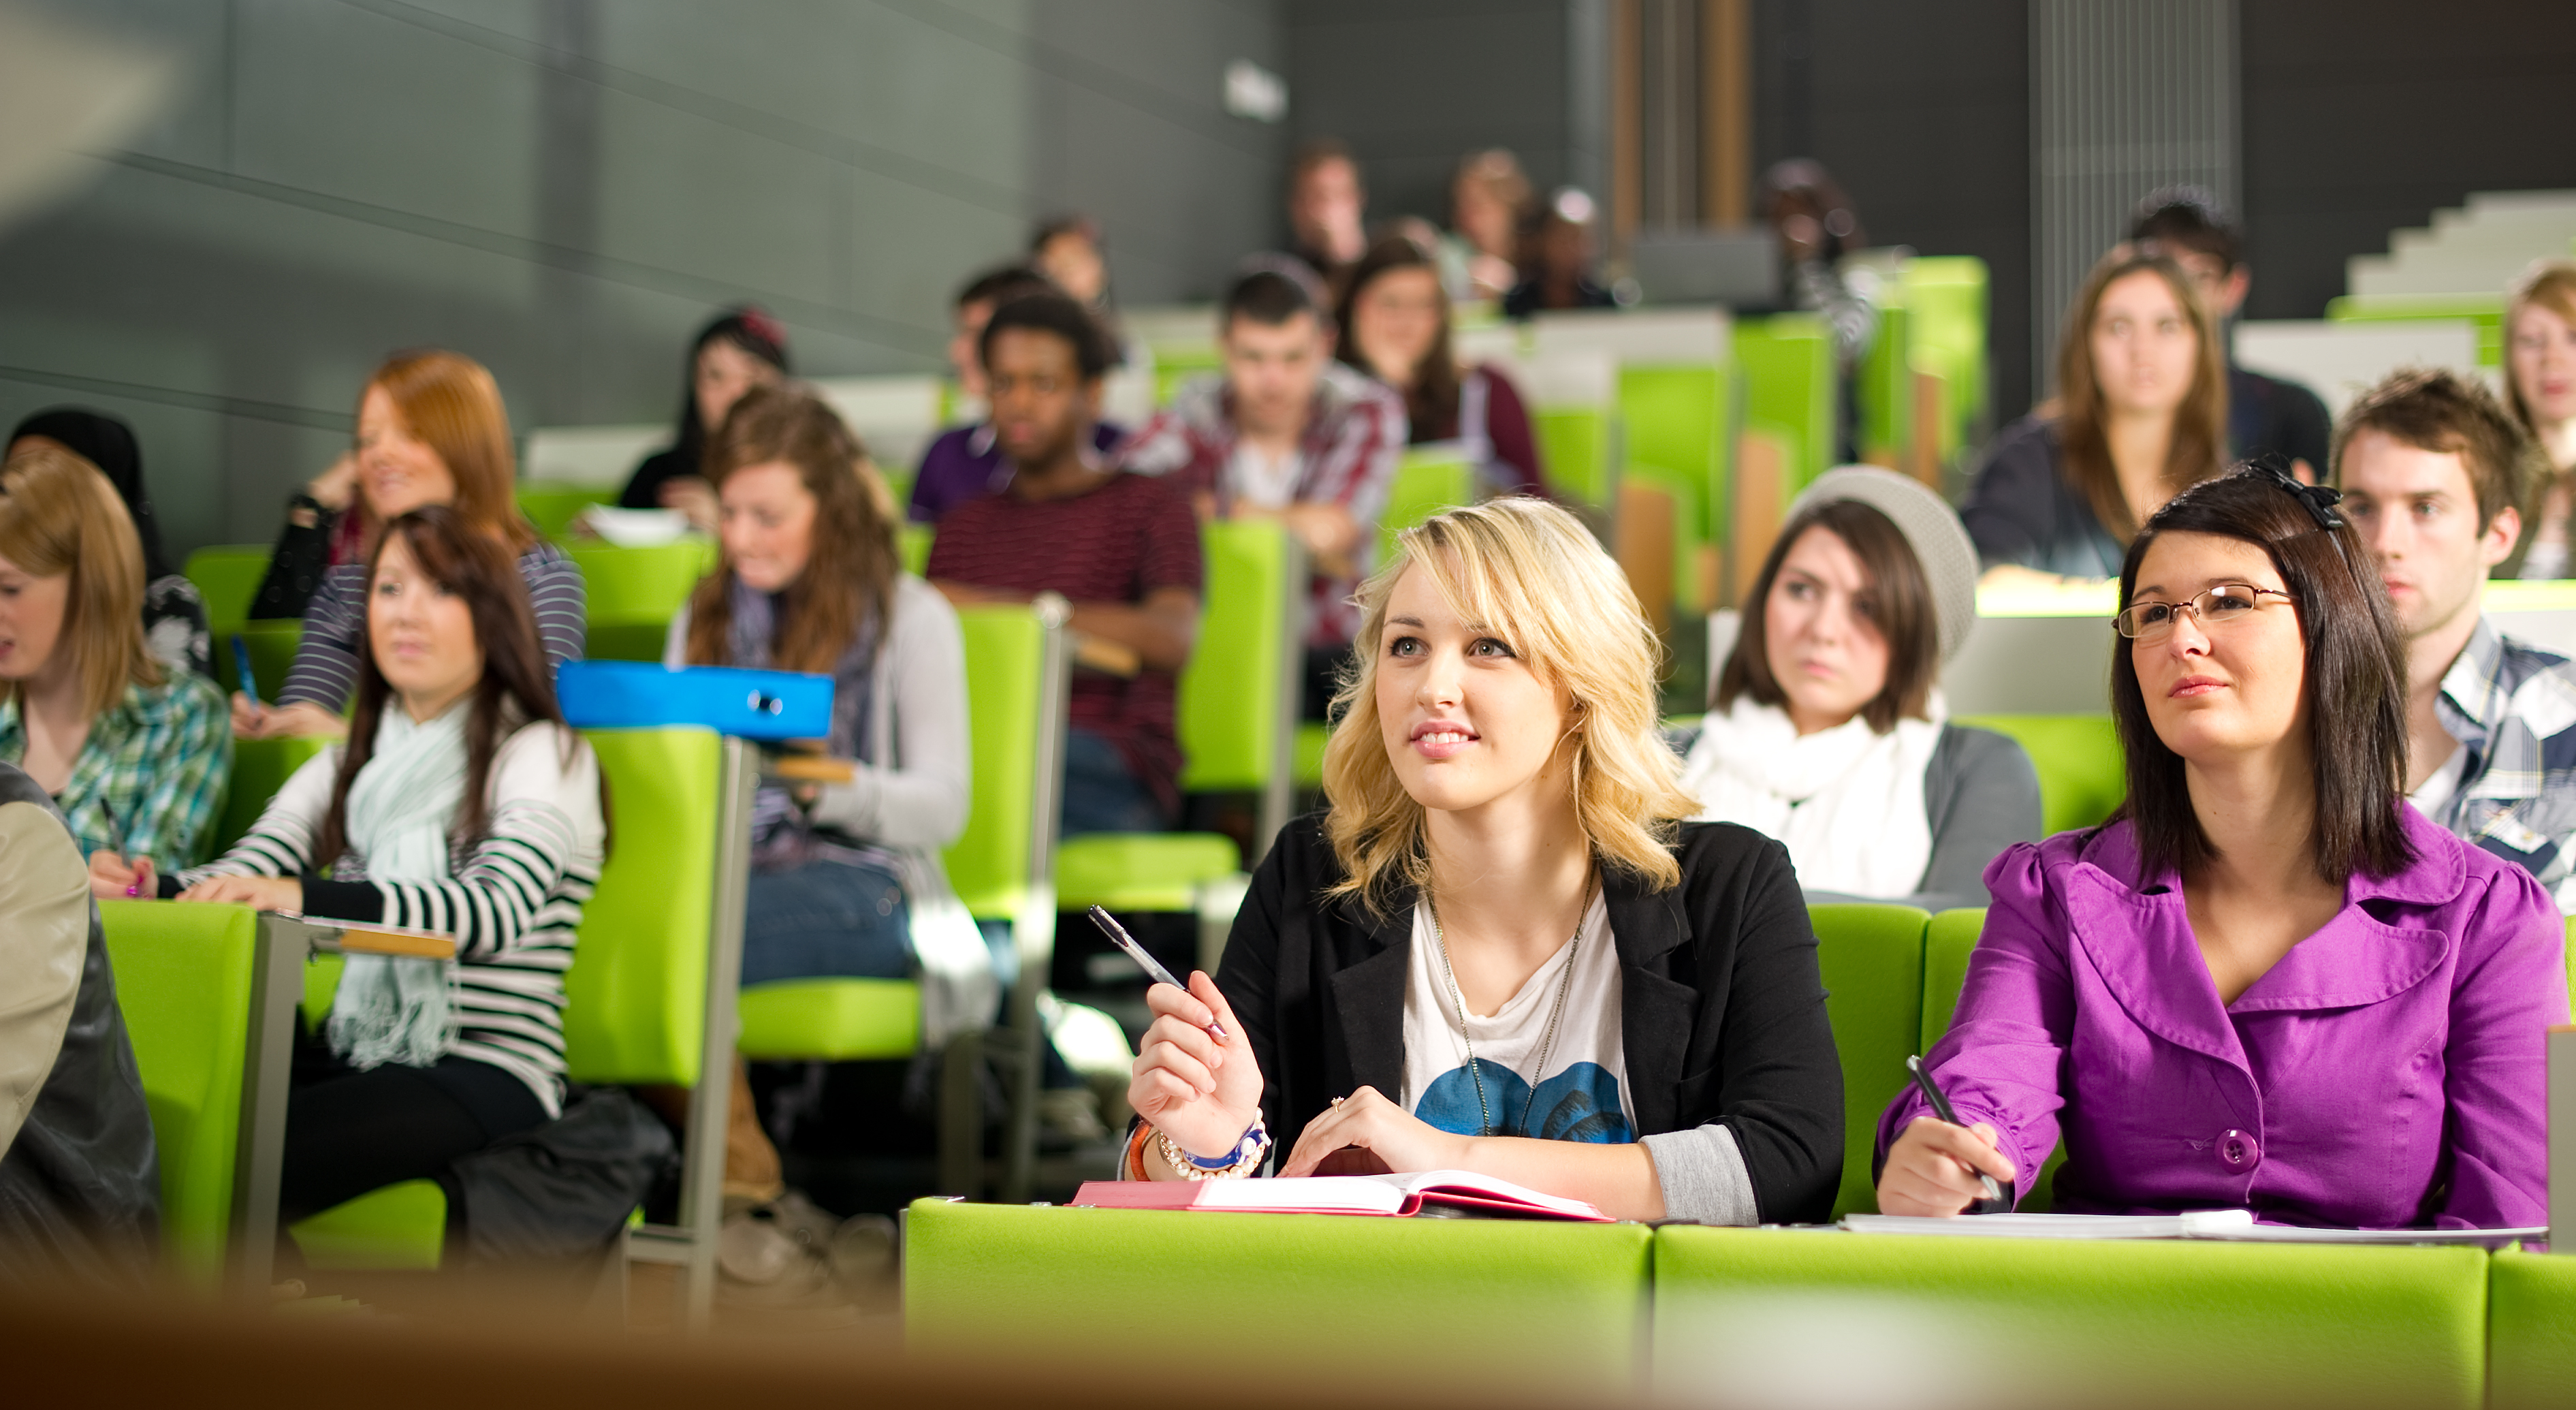 Peste 100.000 de elevi din România vor să îşi continue studiile peste hotare. Motivul? Sistem de învăţământ mai performant, mai multe oportunităţi de carieră şi salarii mai mari